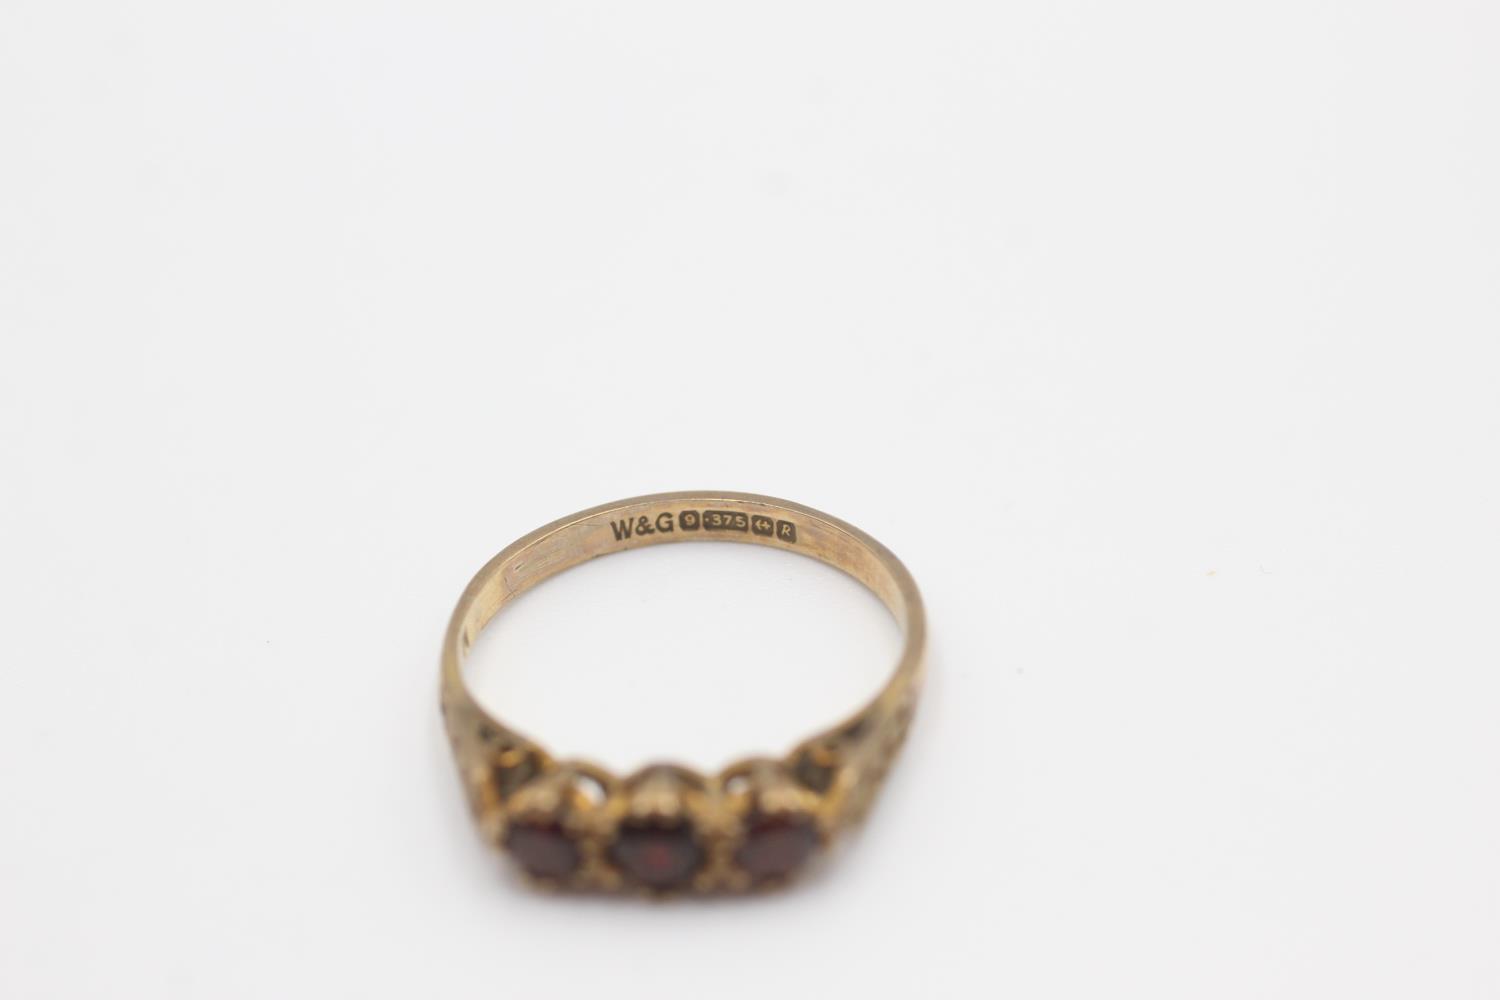 9ct gold garnet fronted ornate frame ring (1.6g) Size L - Image 4 of 4